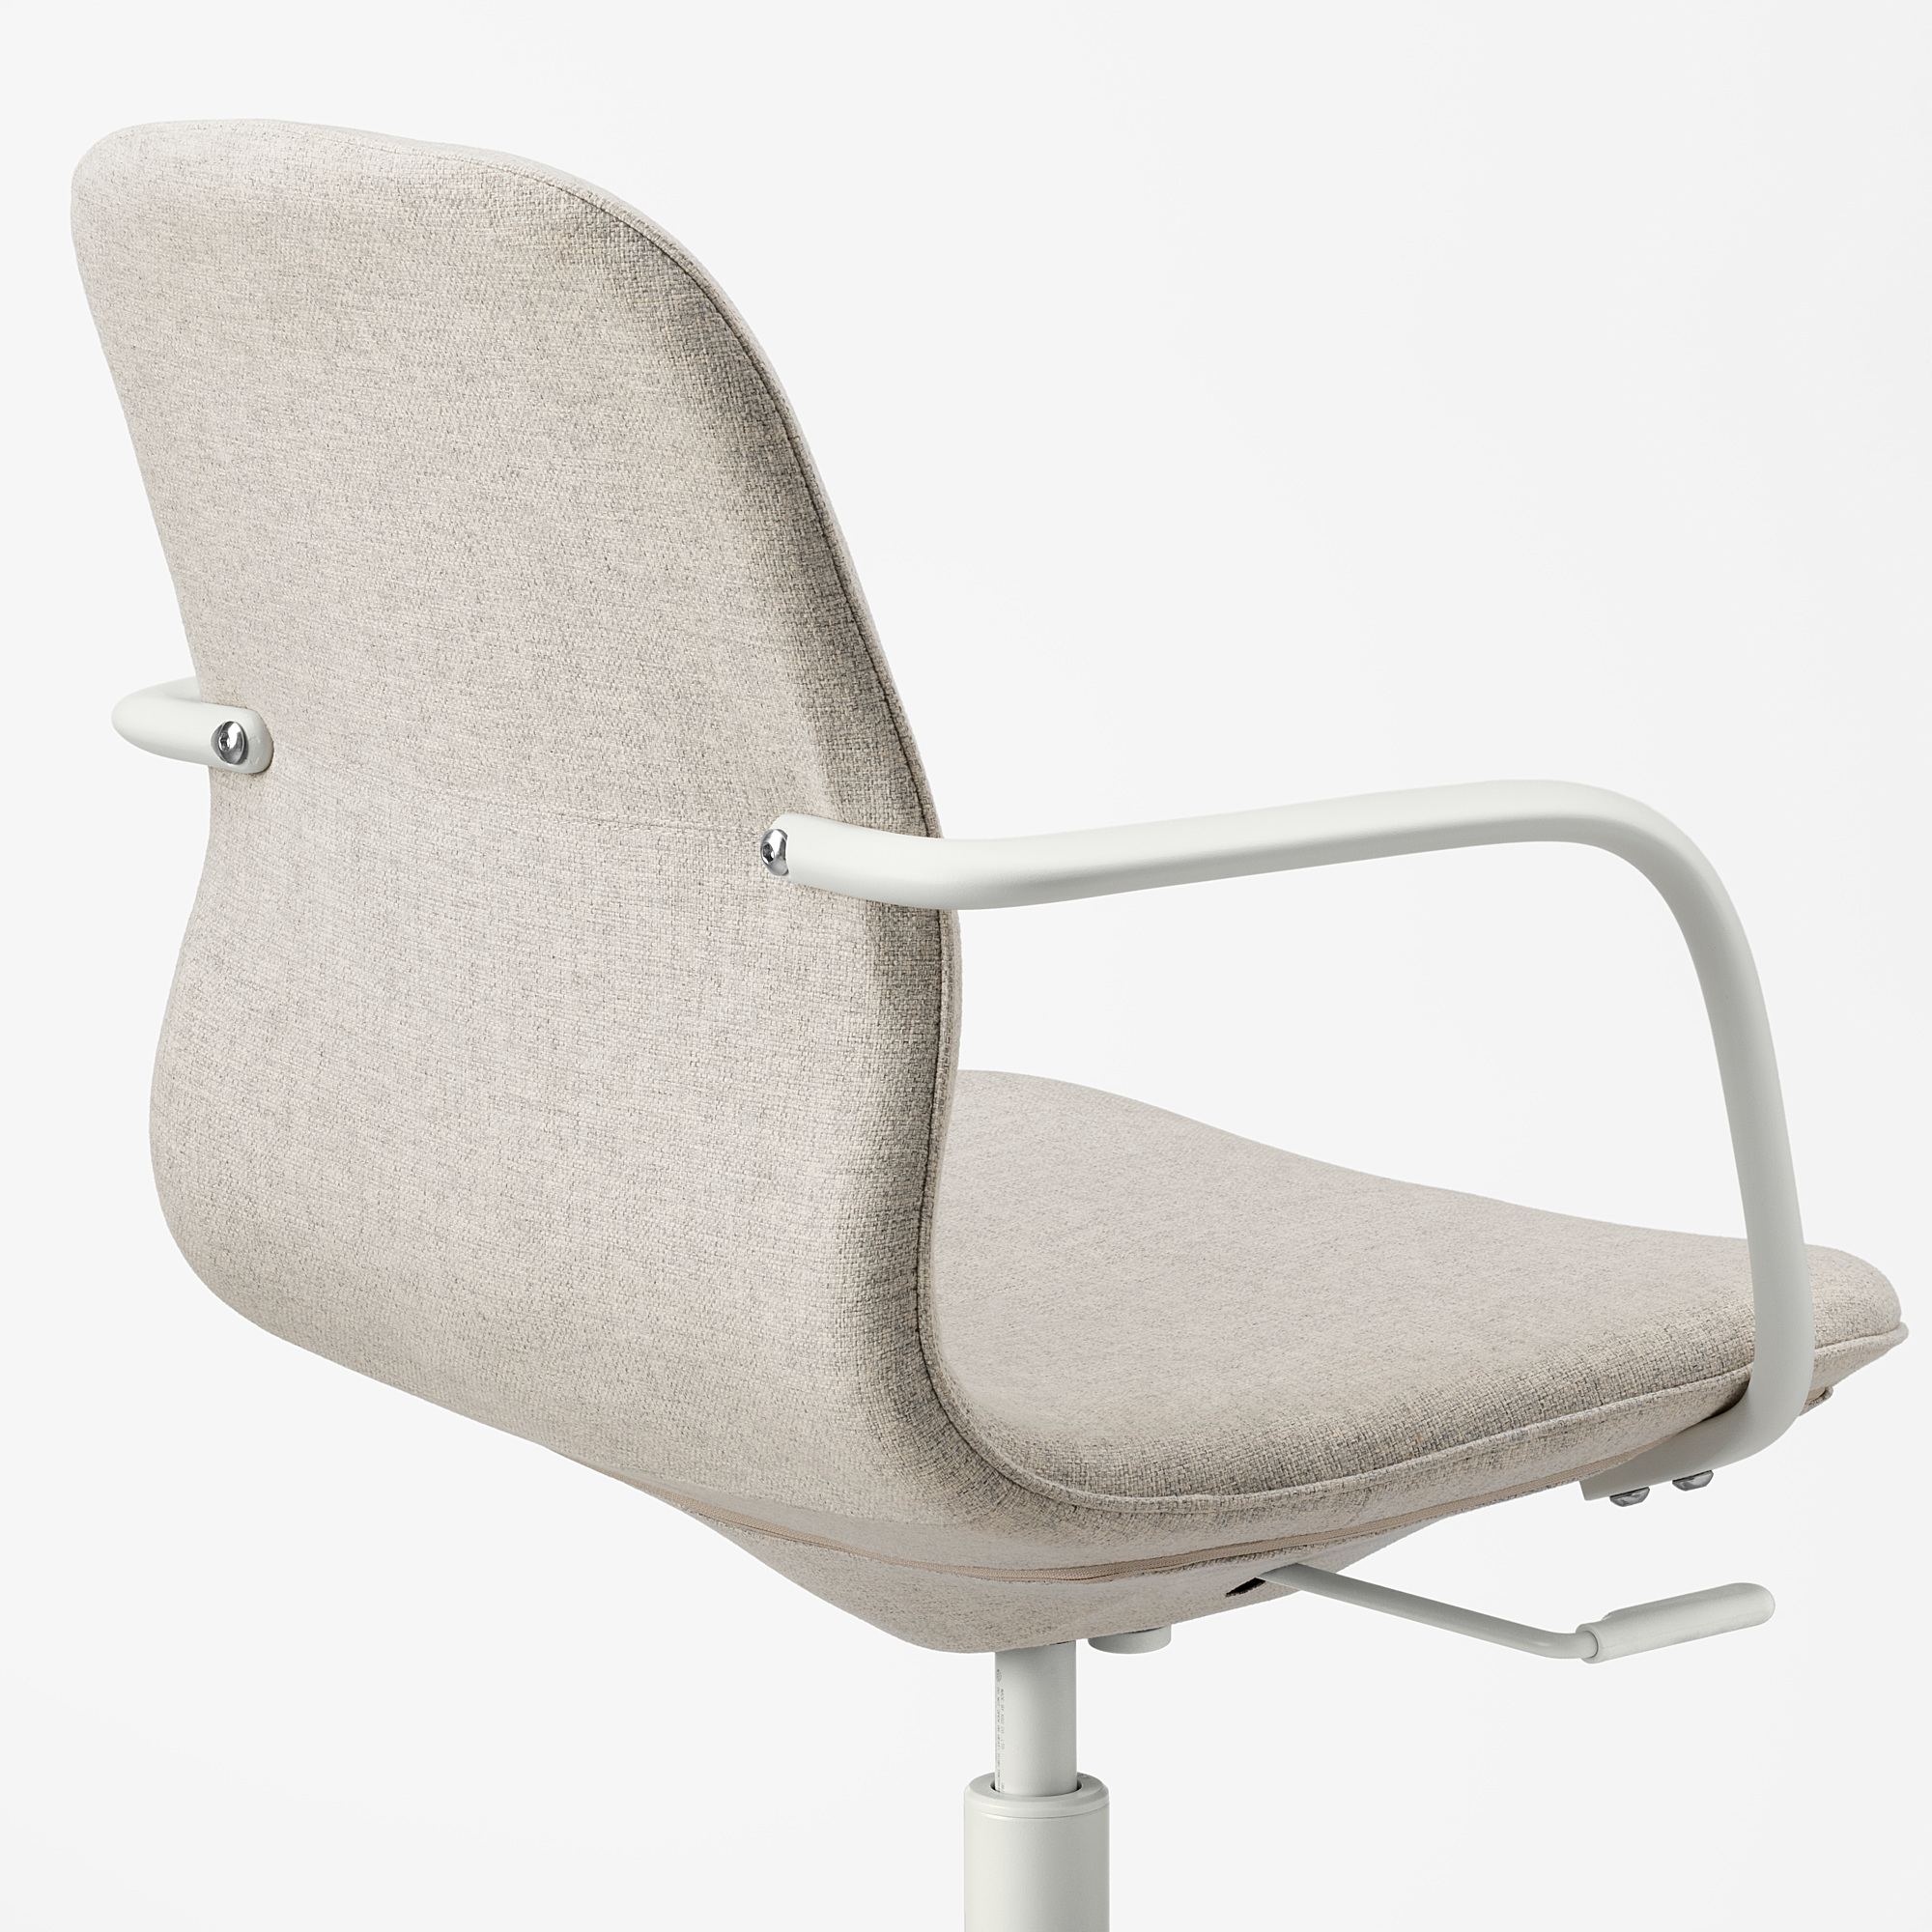 LÅNGFJÄLL office chair with armrests